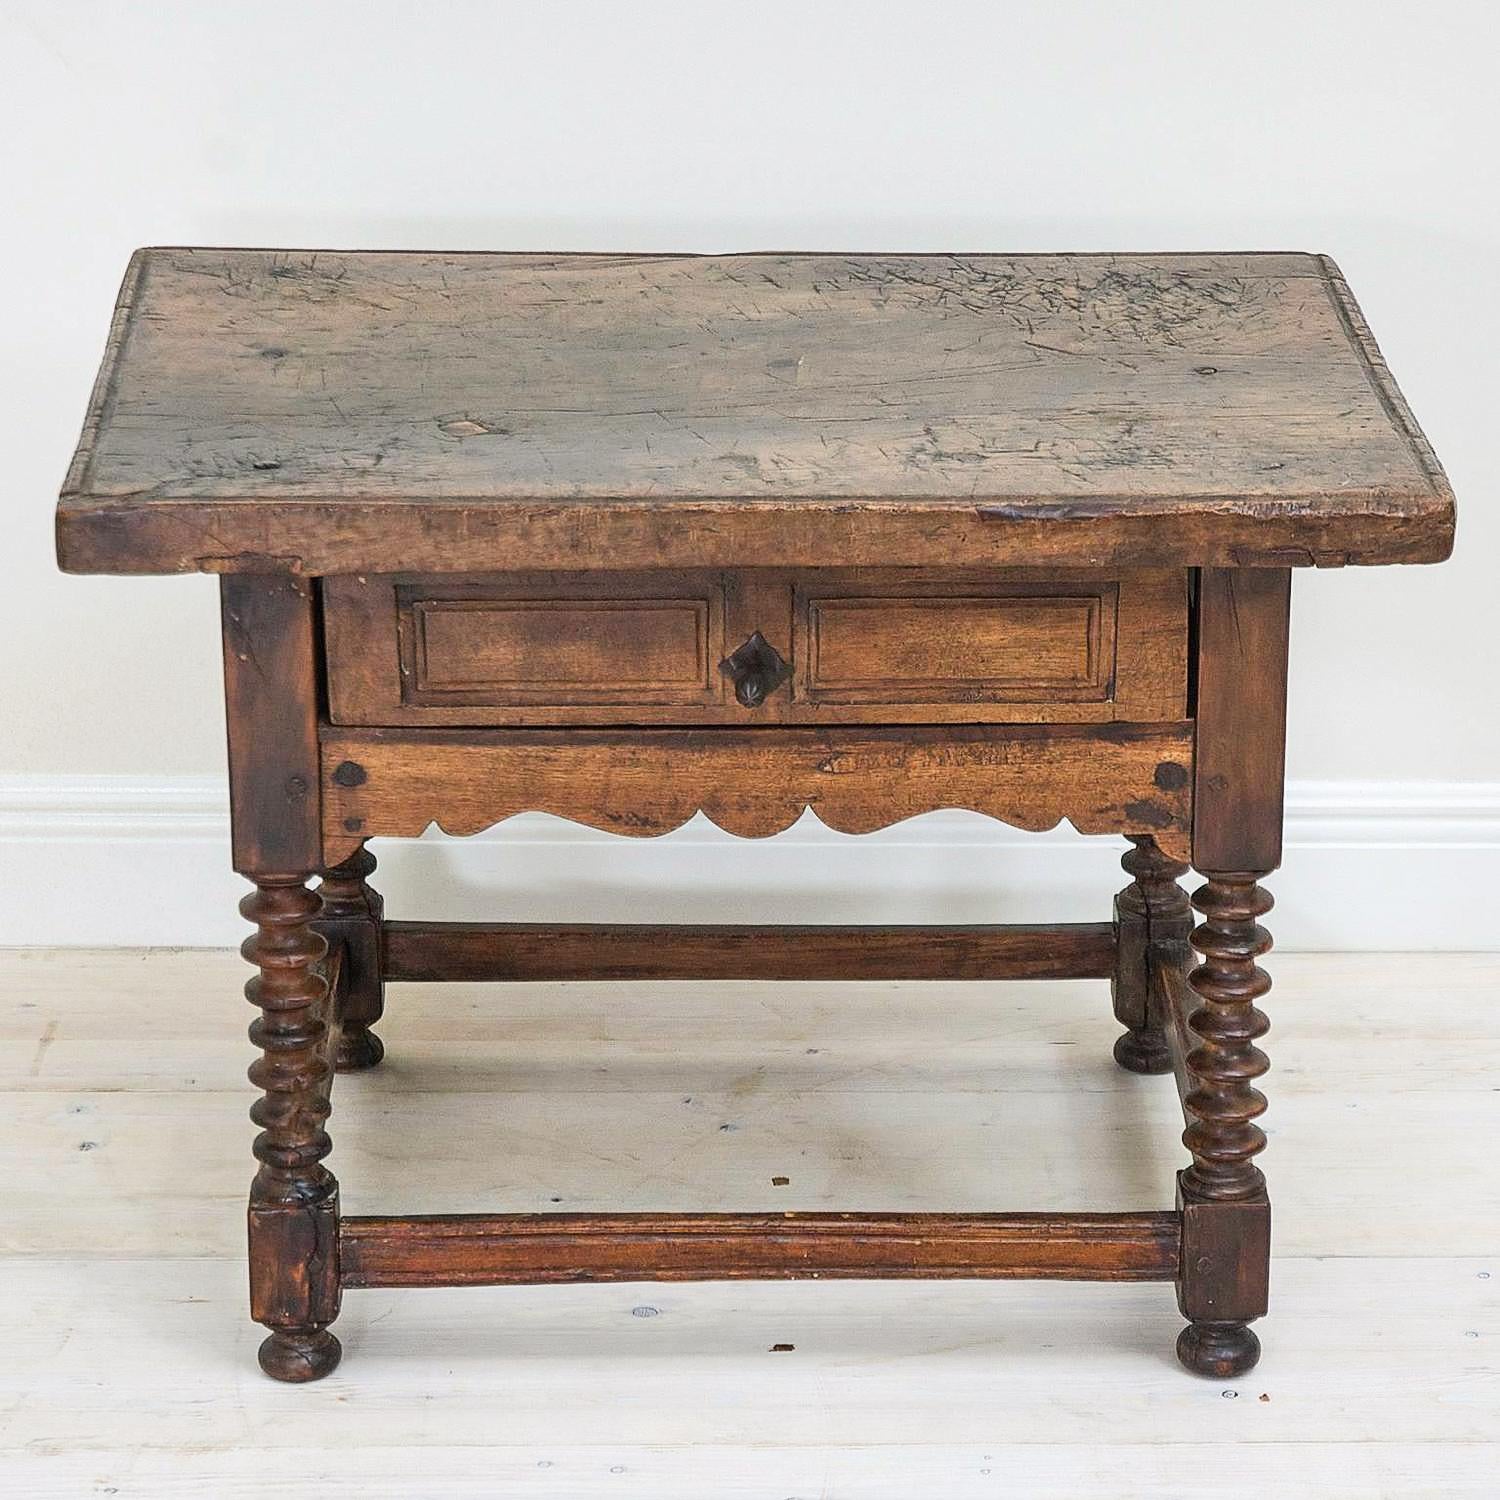 Cette table de travail rustique de cordonnier espagnol (mesa de zapatero) de petite taille datant du XVIIIe siècle a été fabriquée à la main, comme la plupart des meubles traditionnels de ce type, à partir de noyer massif. Le plateau de la table est